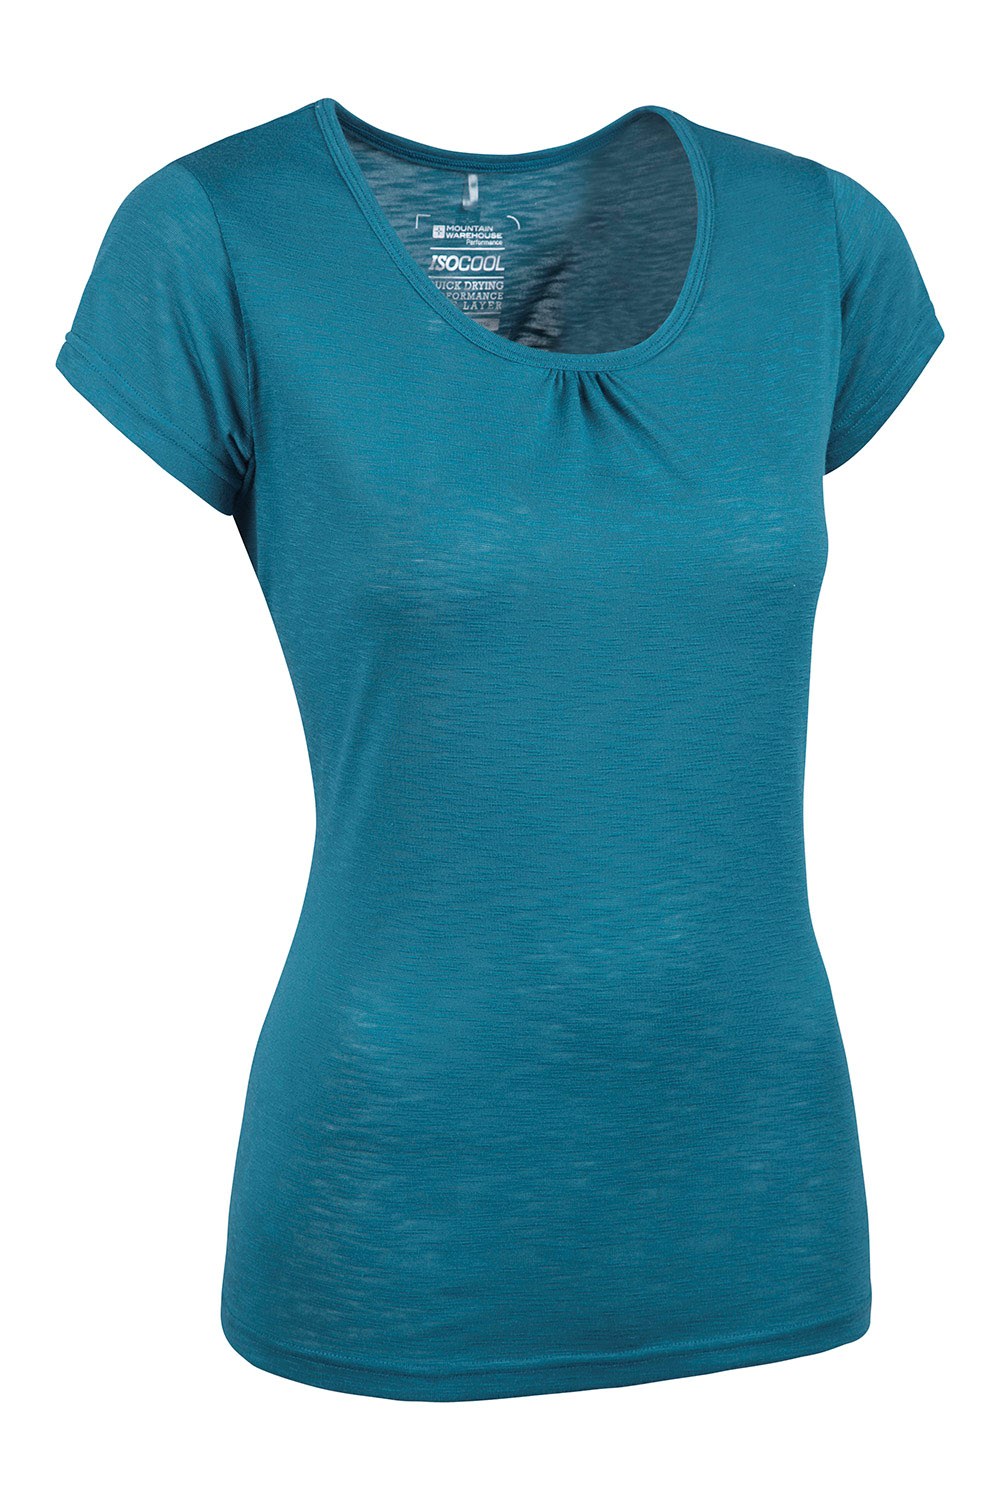 Mountain Warehouse Agra Camiseta para Mujer para Deportes al Aire Libre Absorbente Ligera de Verano Transpirable Senderismo y Uso Informal Secado rápido 